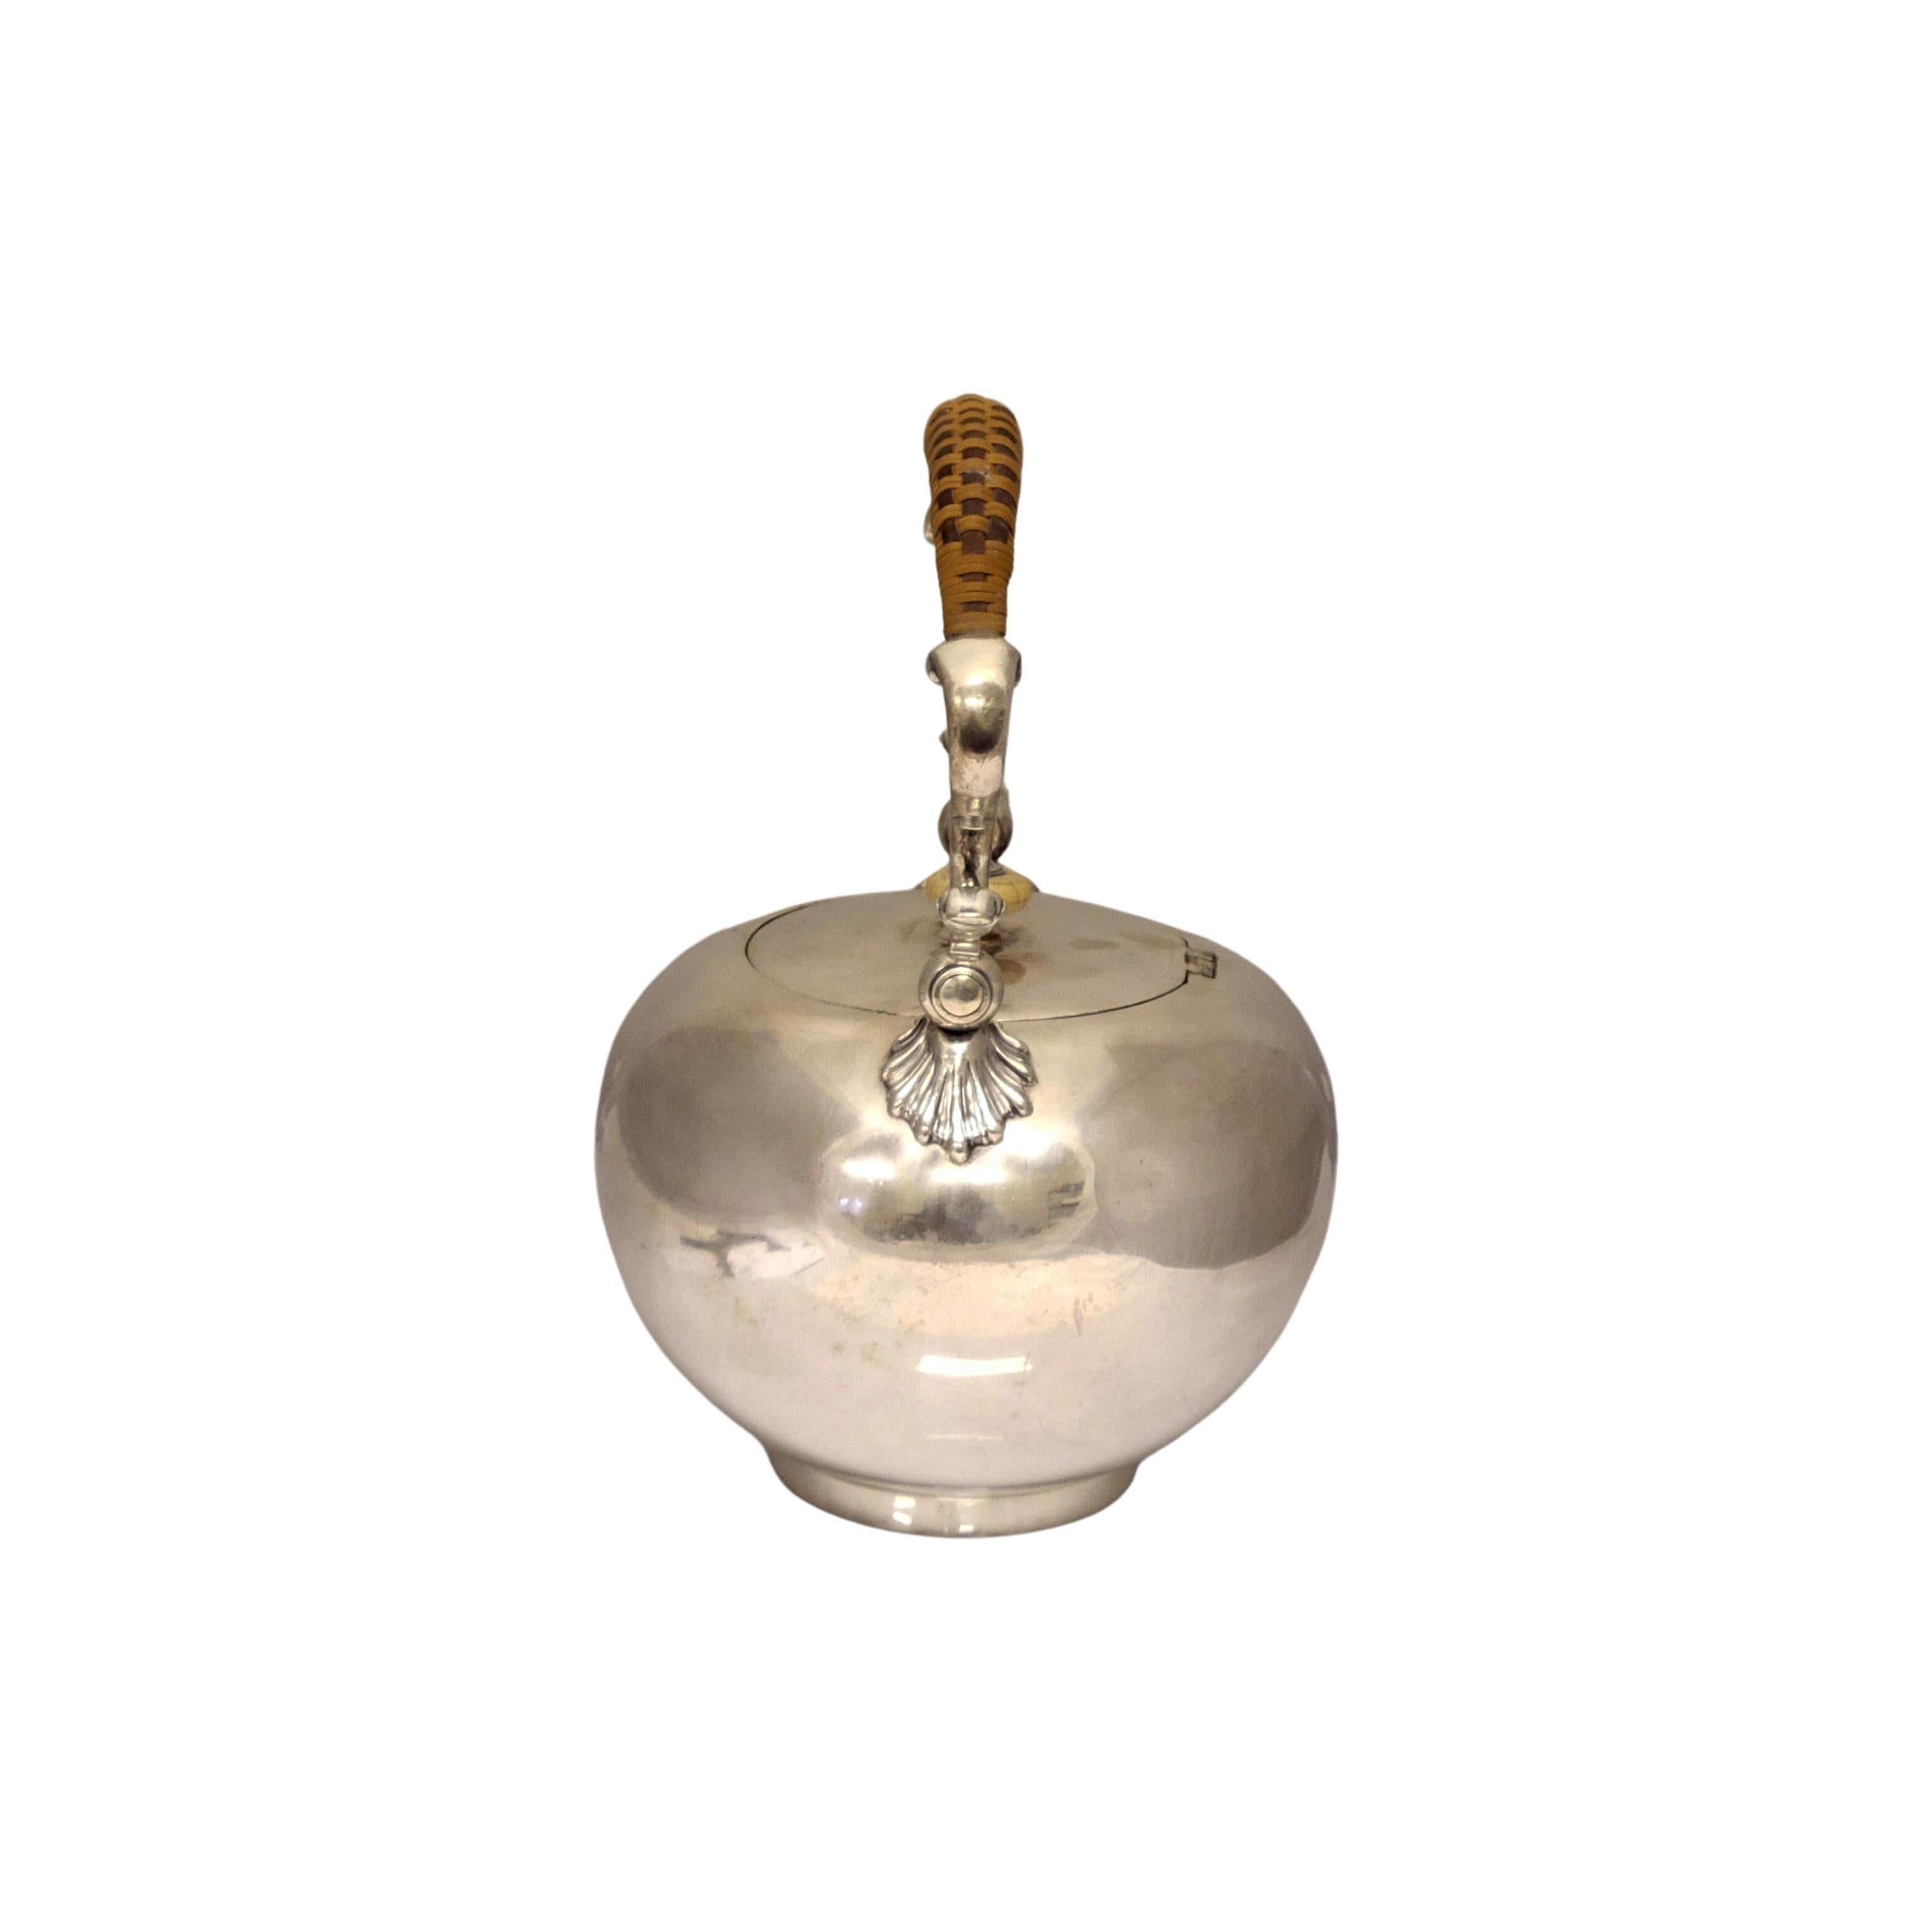 antique silver teapot value